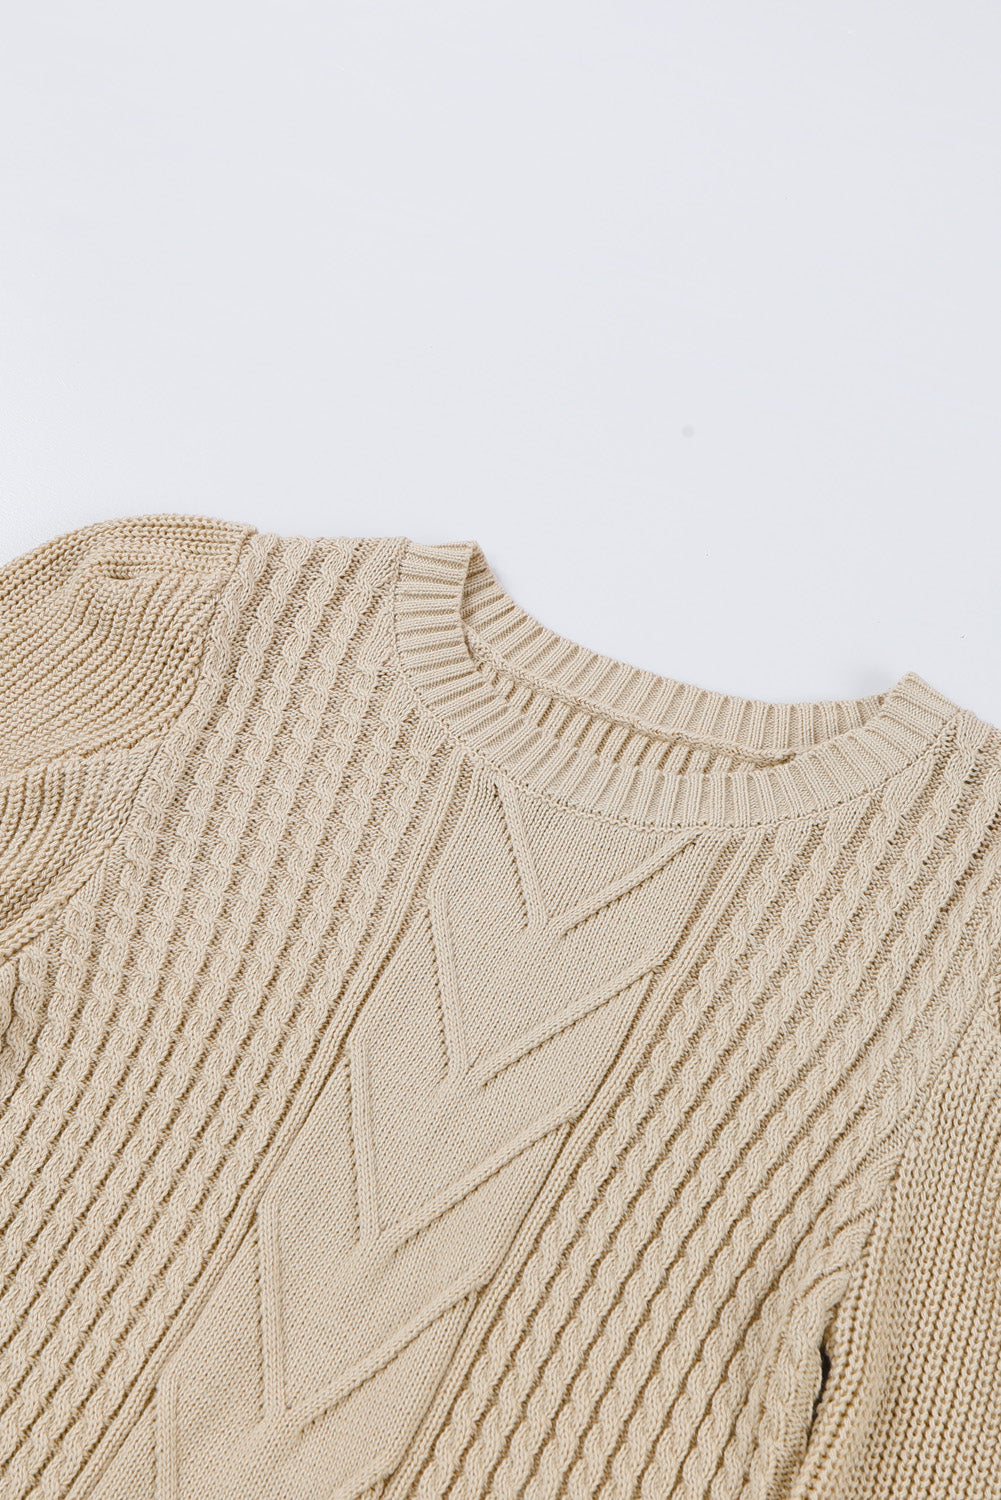 Maglione con maniche a sbuffo in maglia a costine a trecce color albicocca